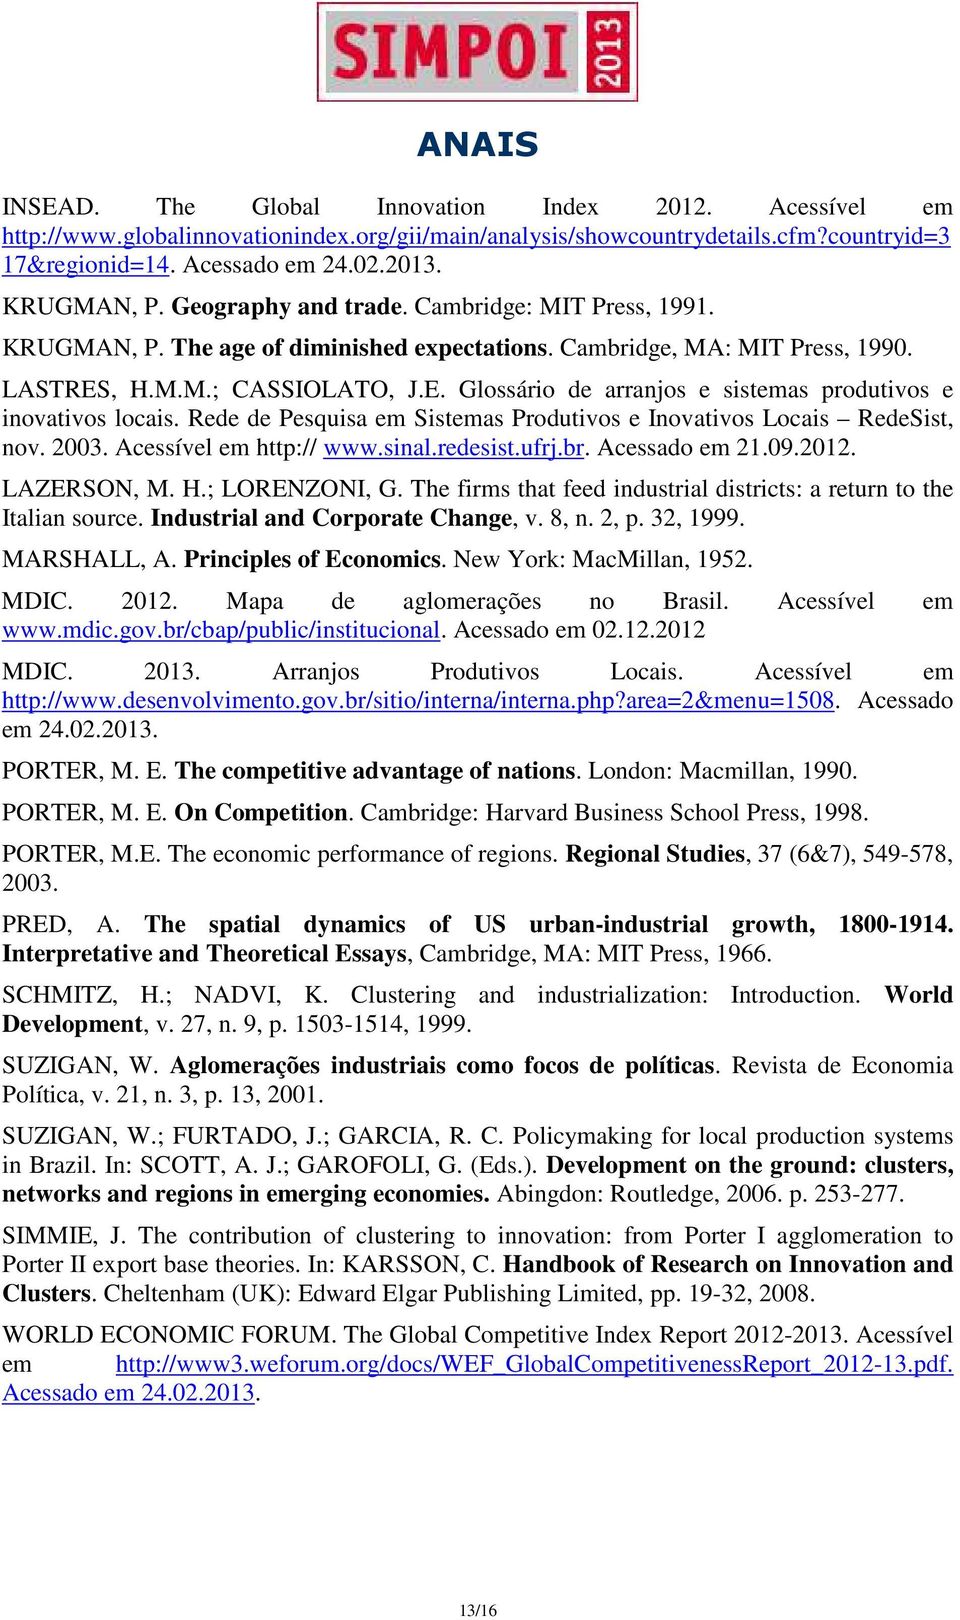 , H.M.M.; CASSIOLATO, J.E. Glossário de arranjos e sistemas produtivos e inovativos locais. Rede de Pesquisa em Sistemas Produtivos e Inovativos Locais RedeSist, nov. 2003. Acessível em http:// www.